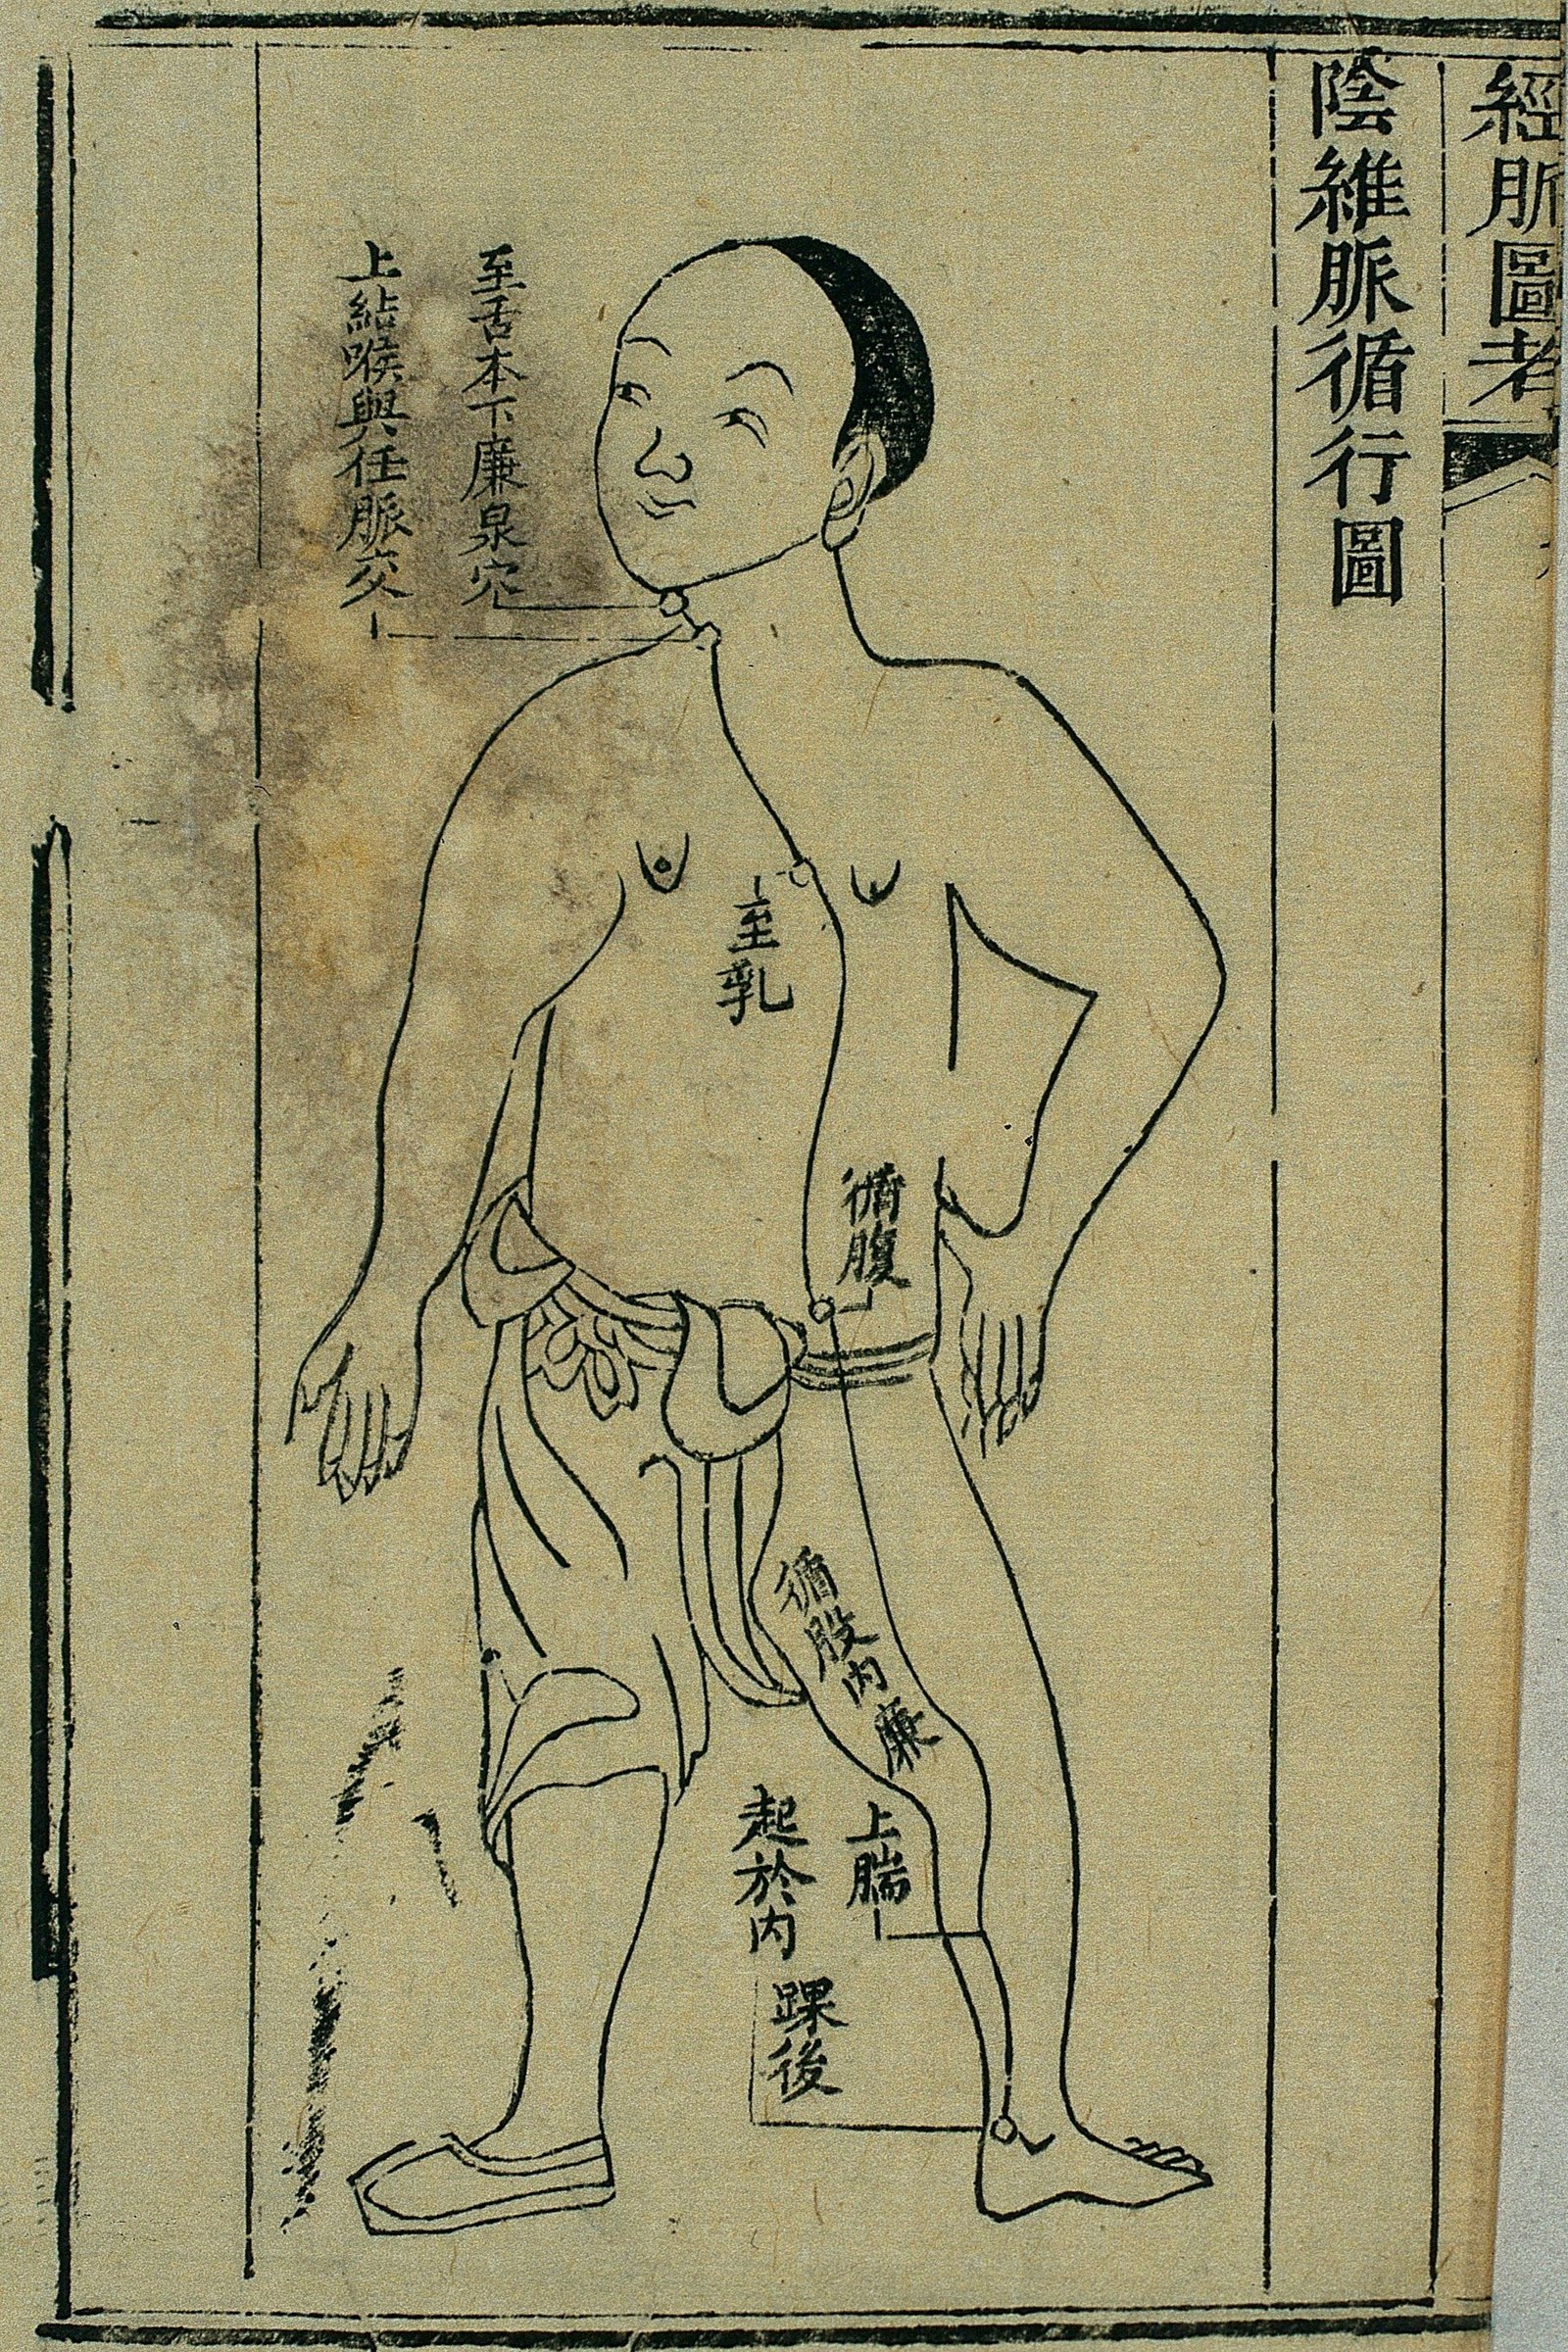 Gravure sur bois, illustrant le trajet du 阴维脉 yīn wéi mài